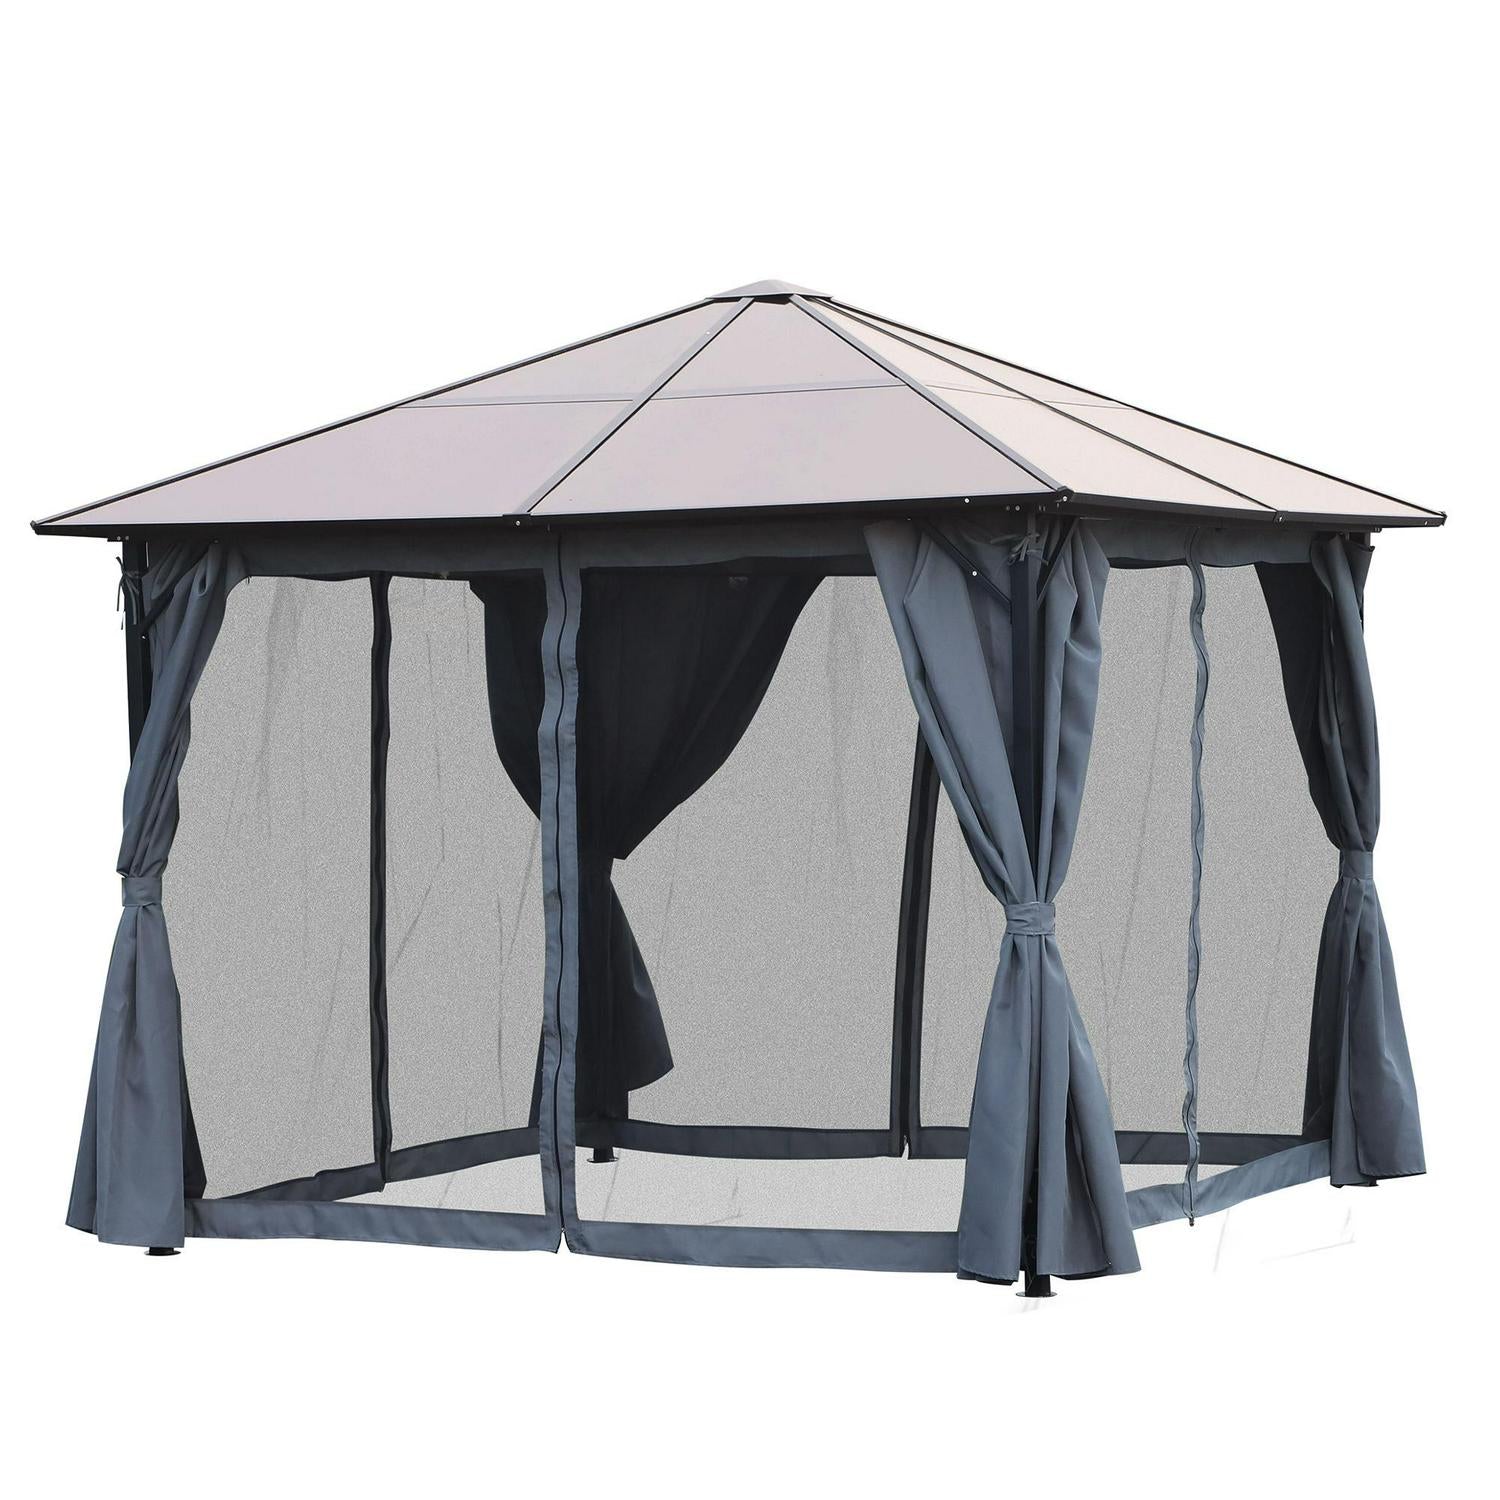 Outdoor Gazebo Patio Garden Canopy Tent